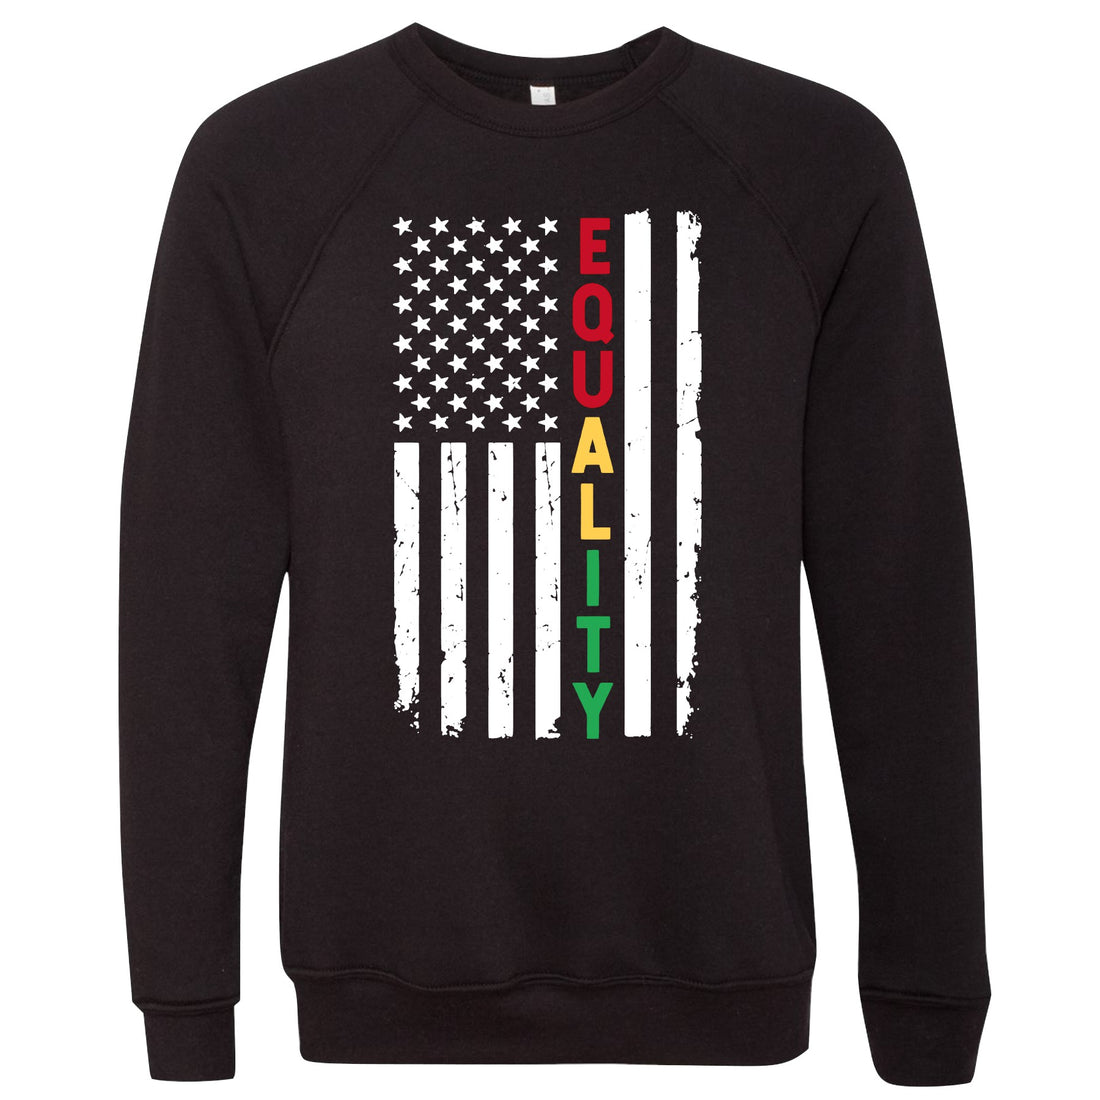 Profyle District - Equality Flag (Sweatshirt) - Sweatshirt - Black